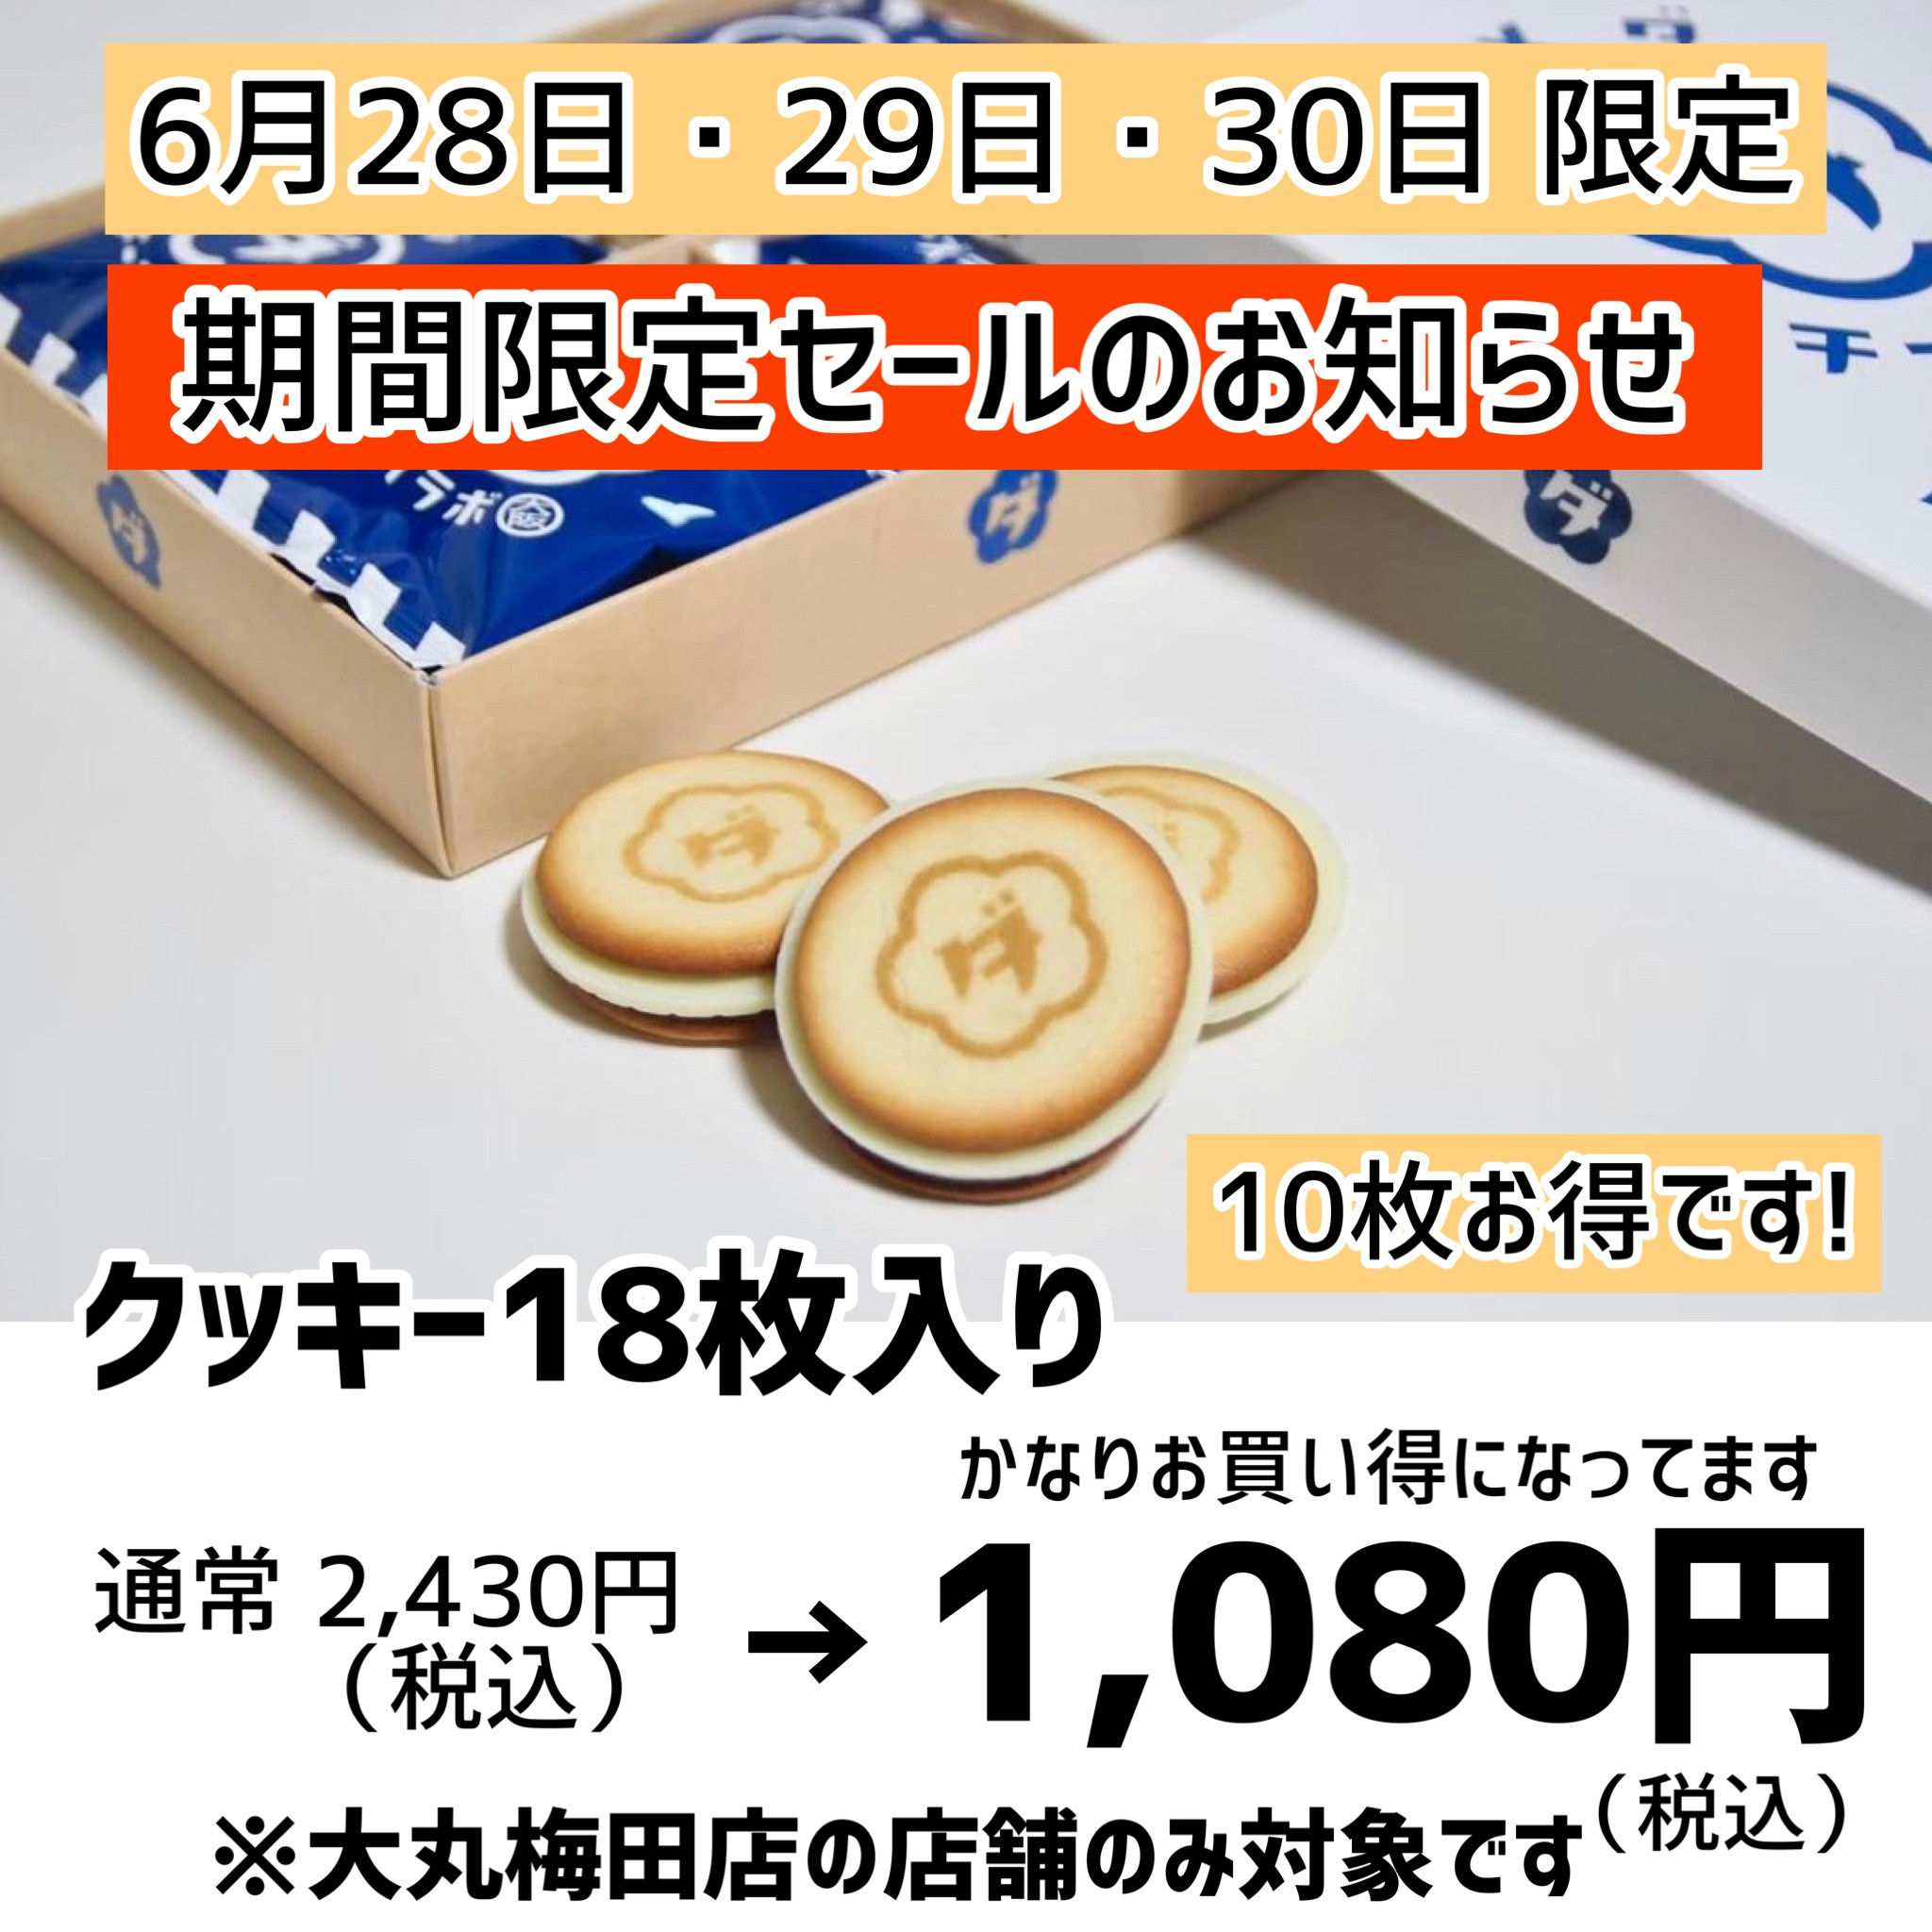 18枚入クッキーを2,430円のところ「1,080円(税込)」で販売するお得なお知らせです。